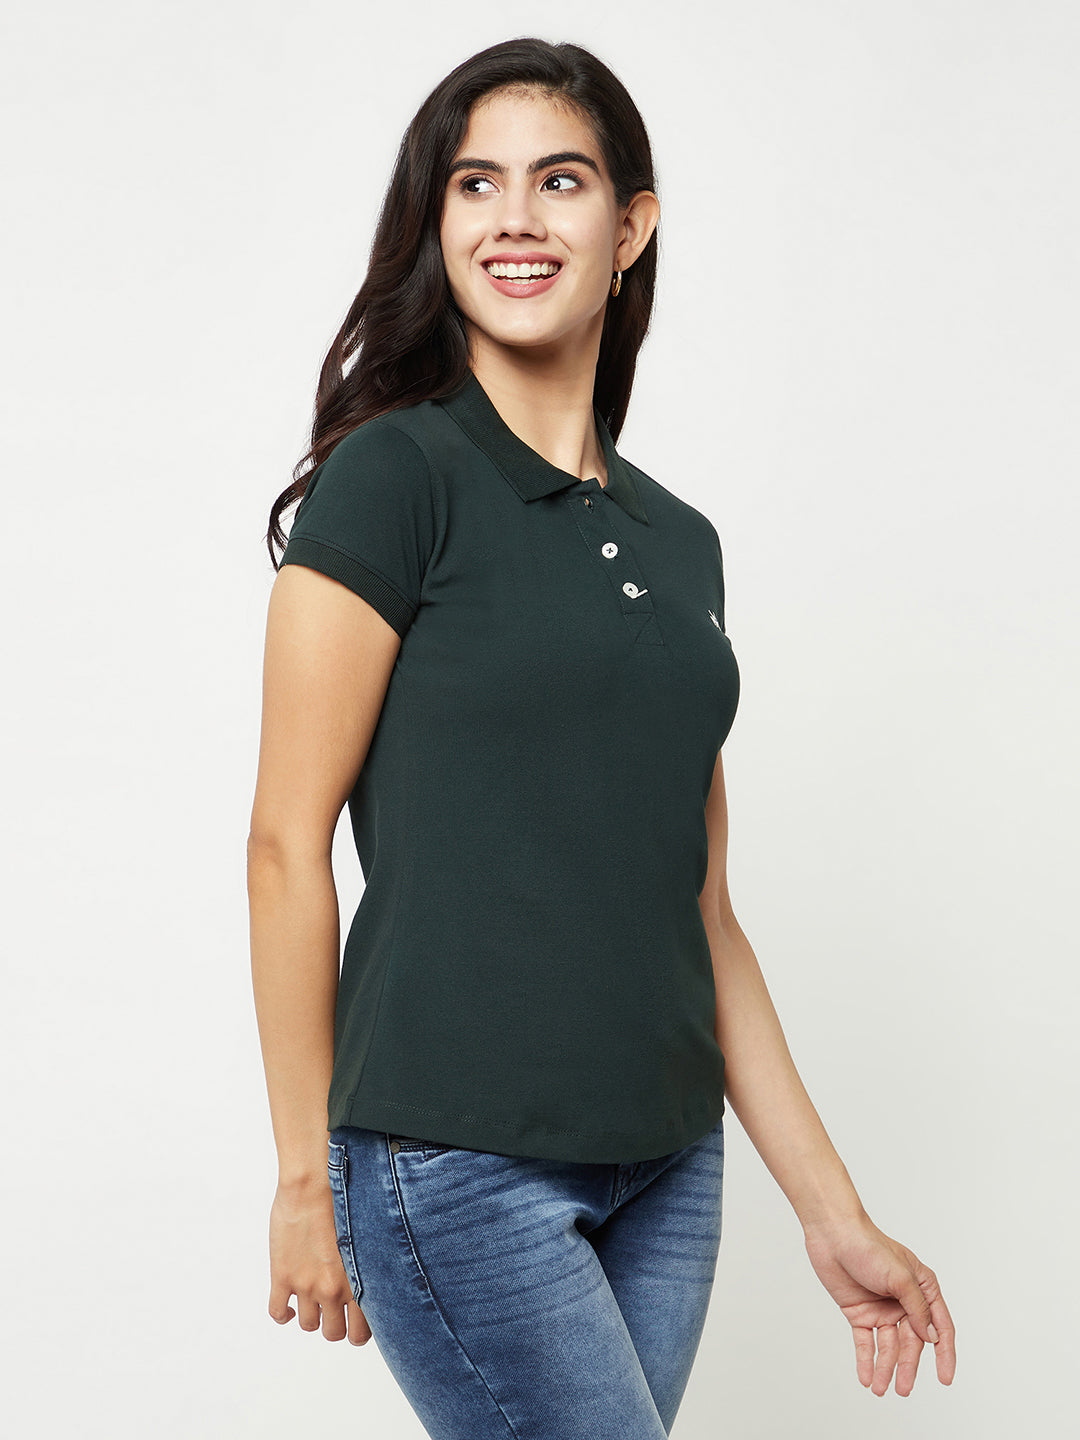 Green Cotton T-Shirt-Women T-shirts-Crimsoune Club